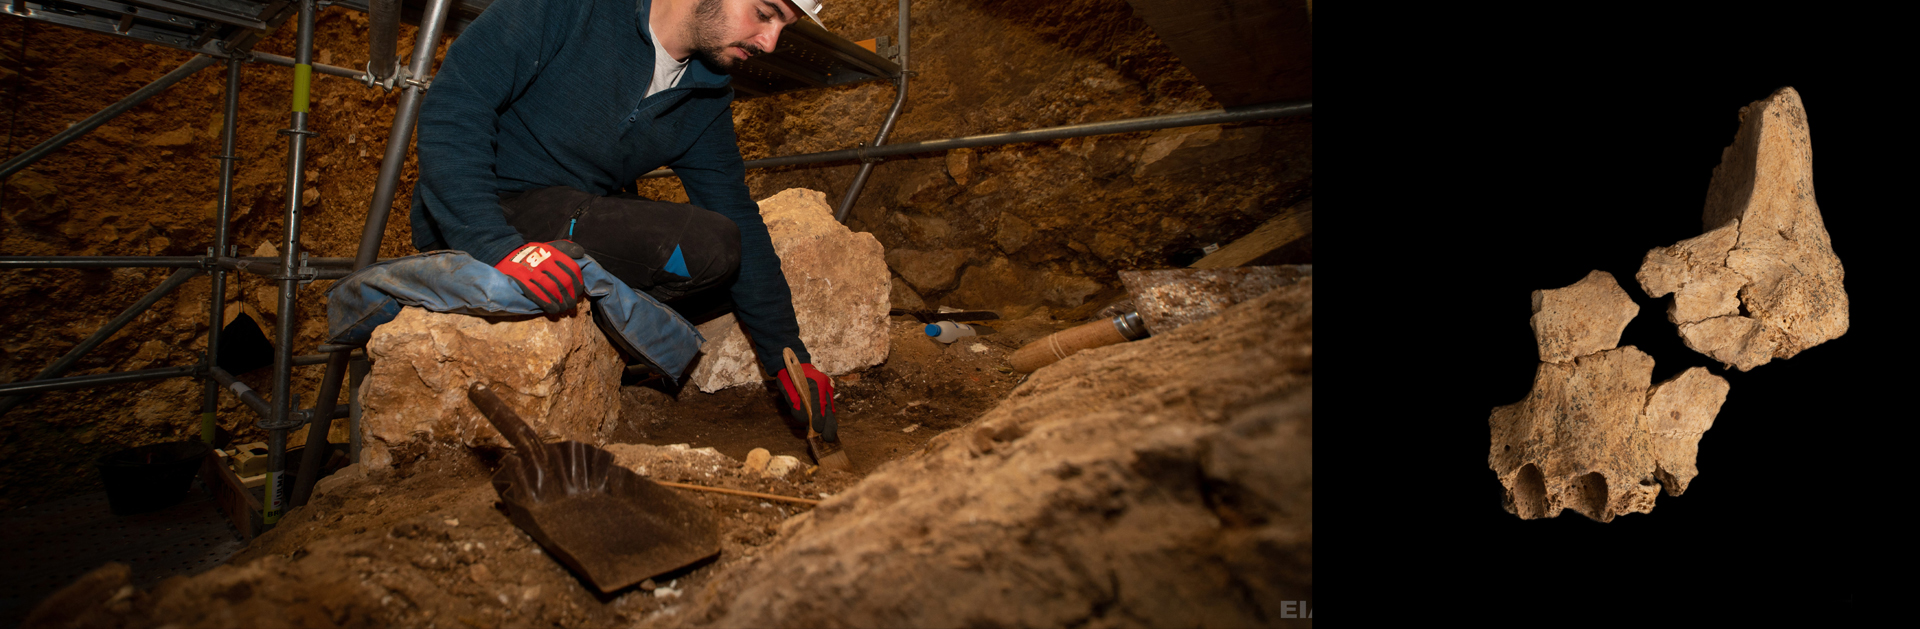 Apareixen noves restes humanes d’1,4 milions d’anys al jaciment d’Atapuerca